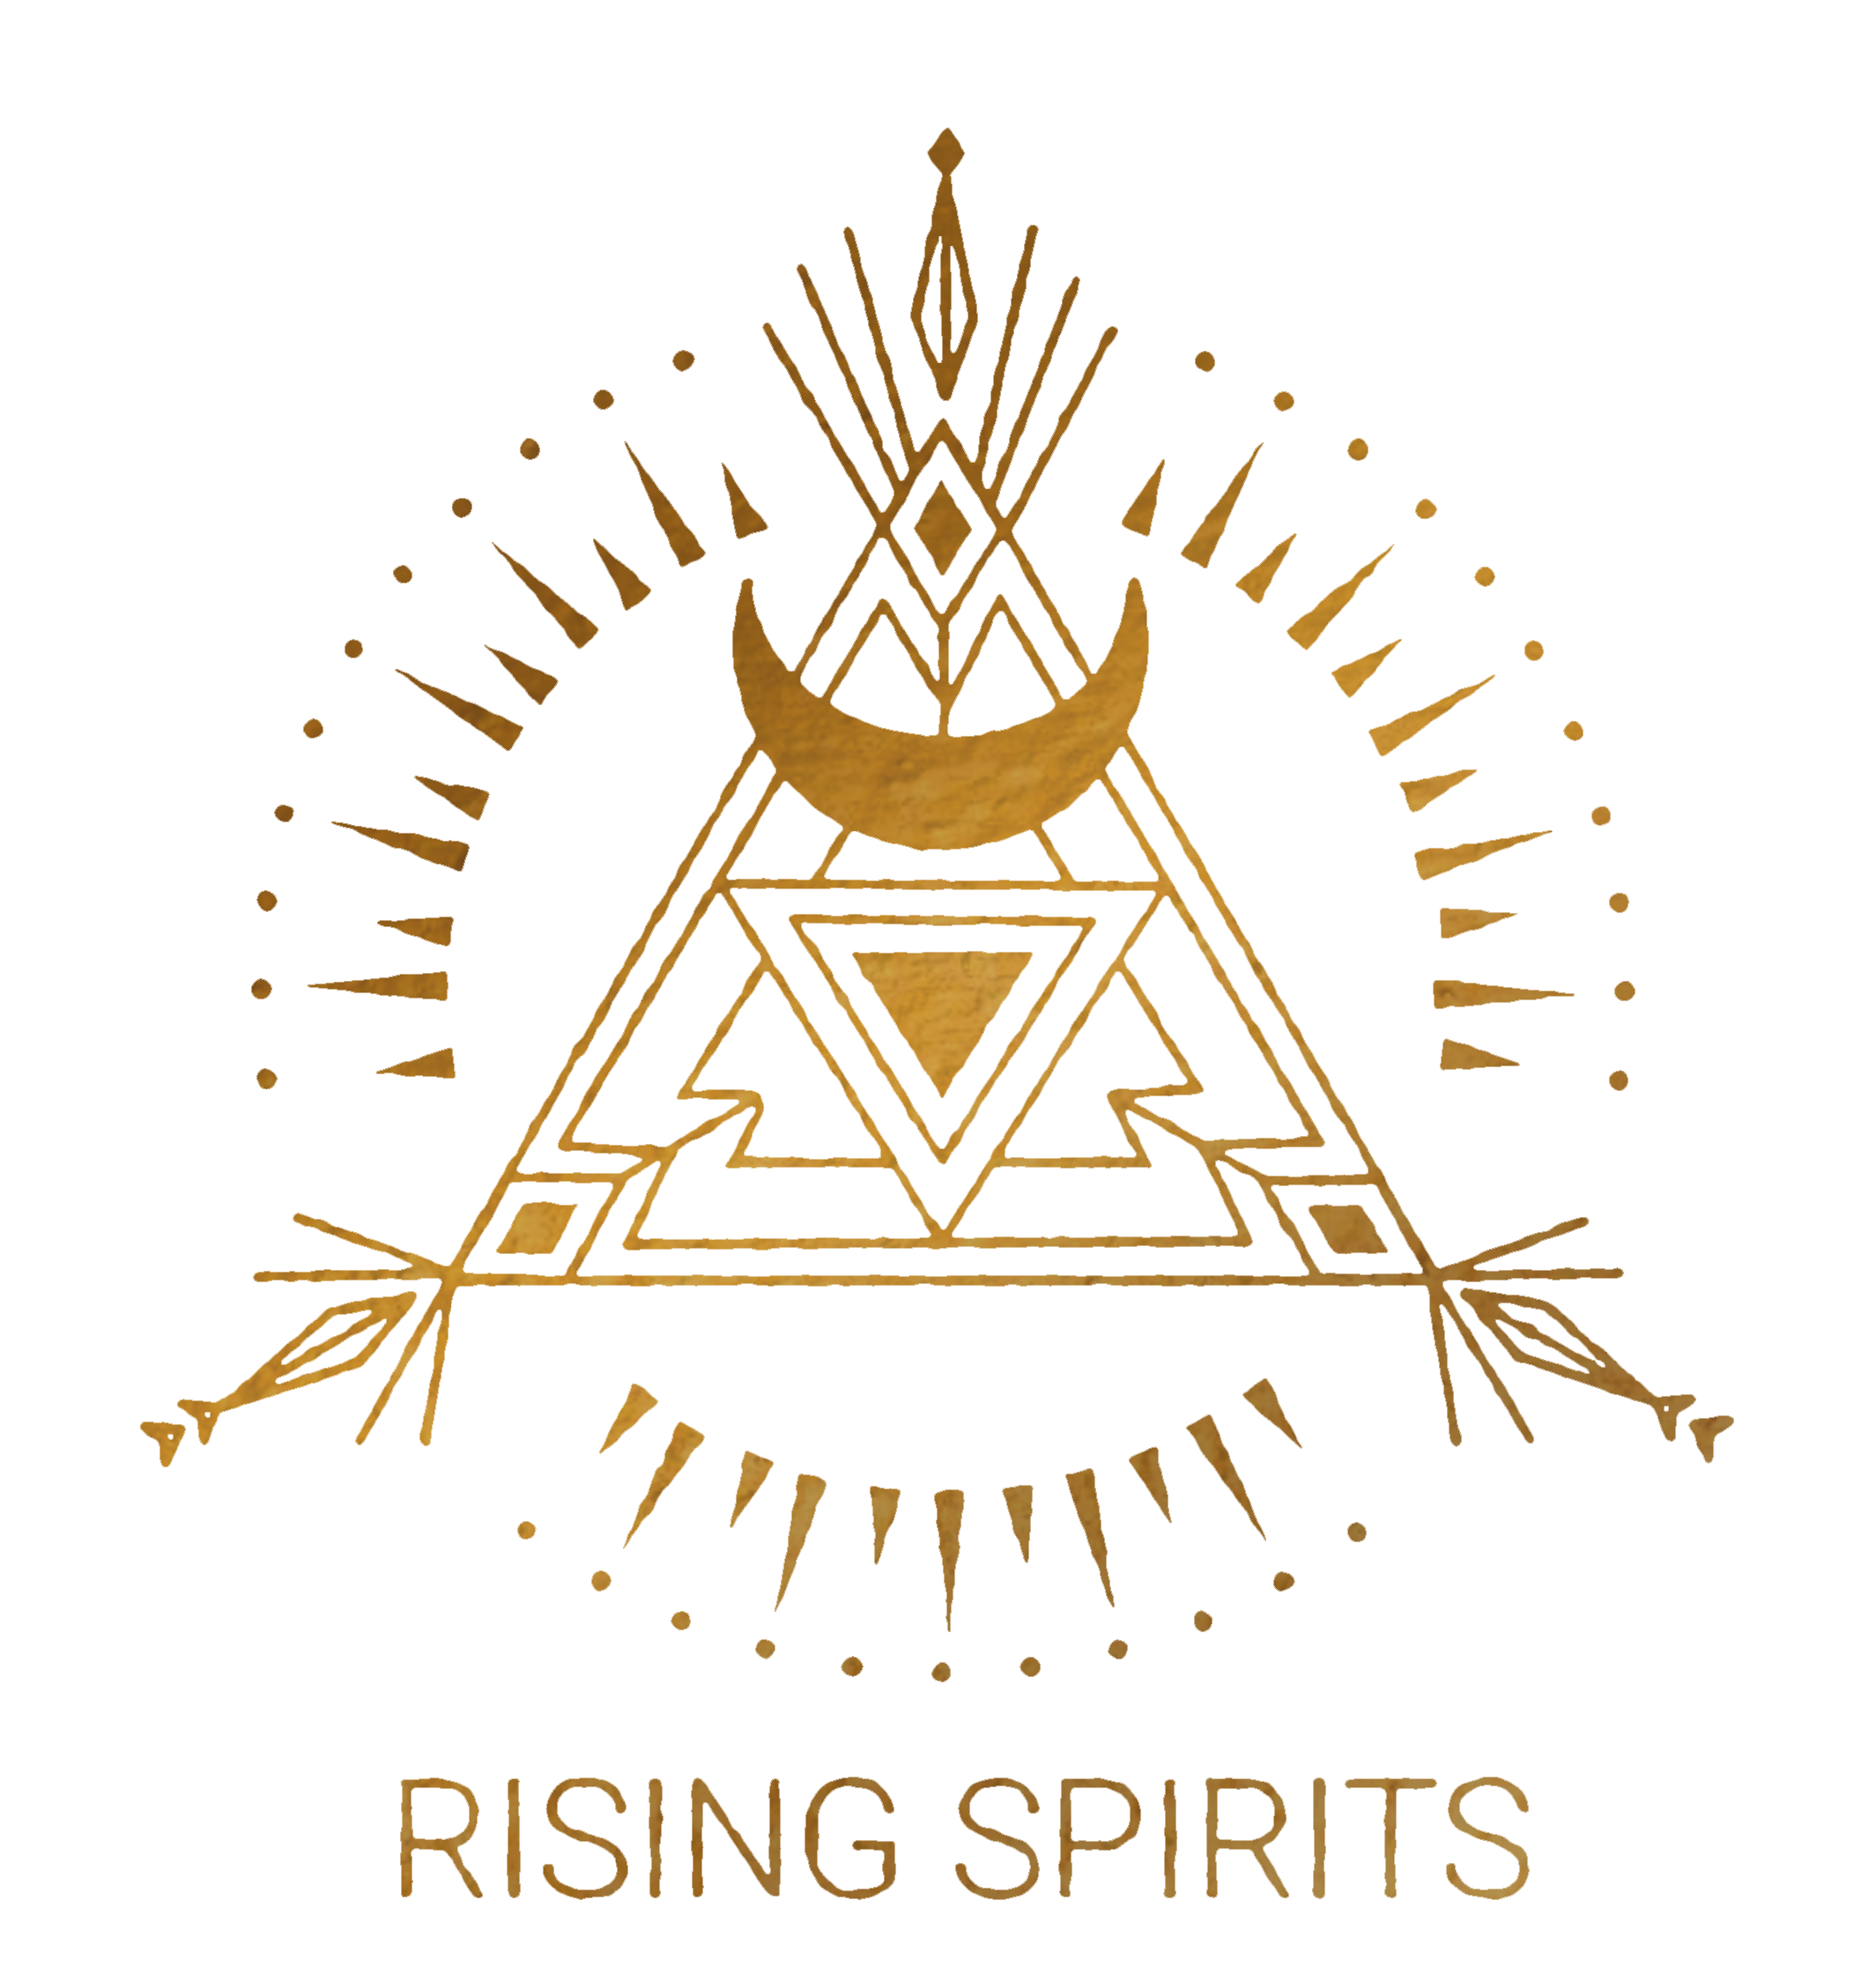 Rising Spirits